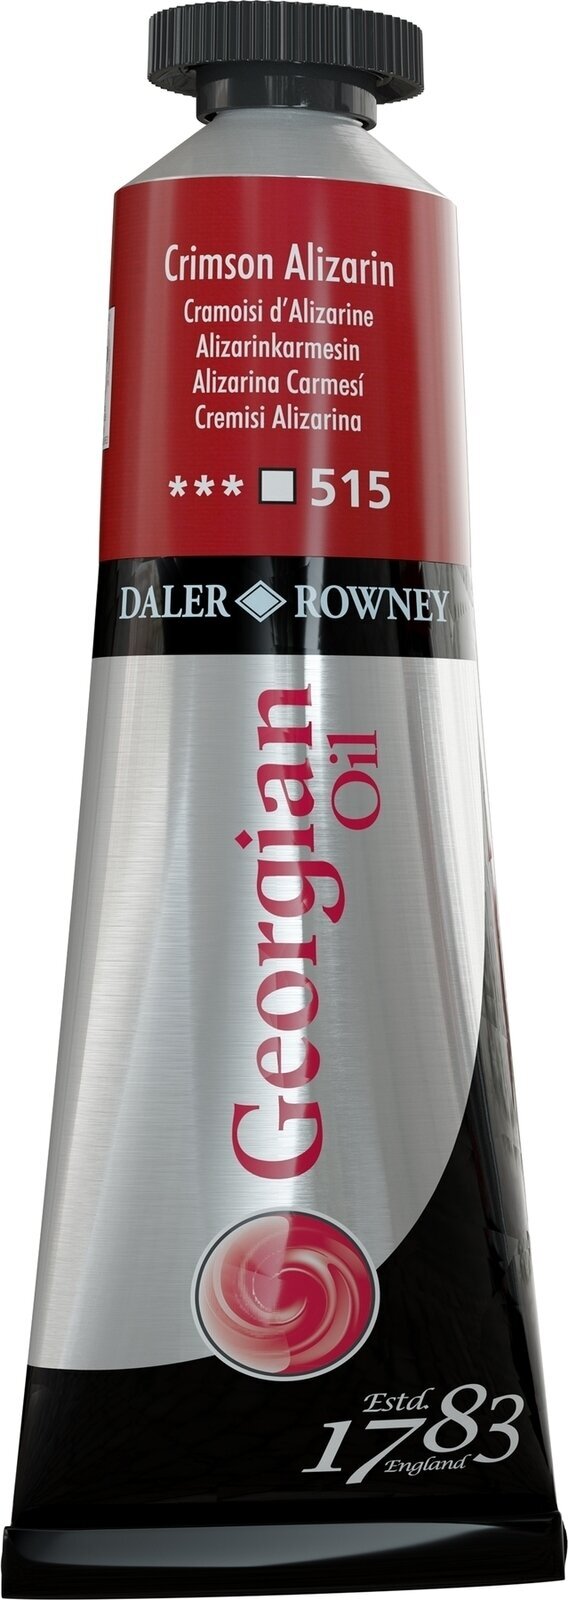 Χρώμα λαδιού Daler Rowney Georgian Λαδομπογιά Crimson Alizarin 38 ml 1 τεμ.